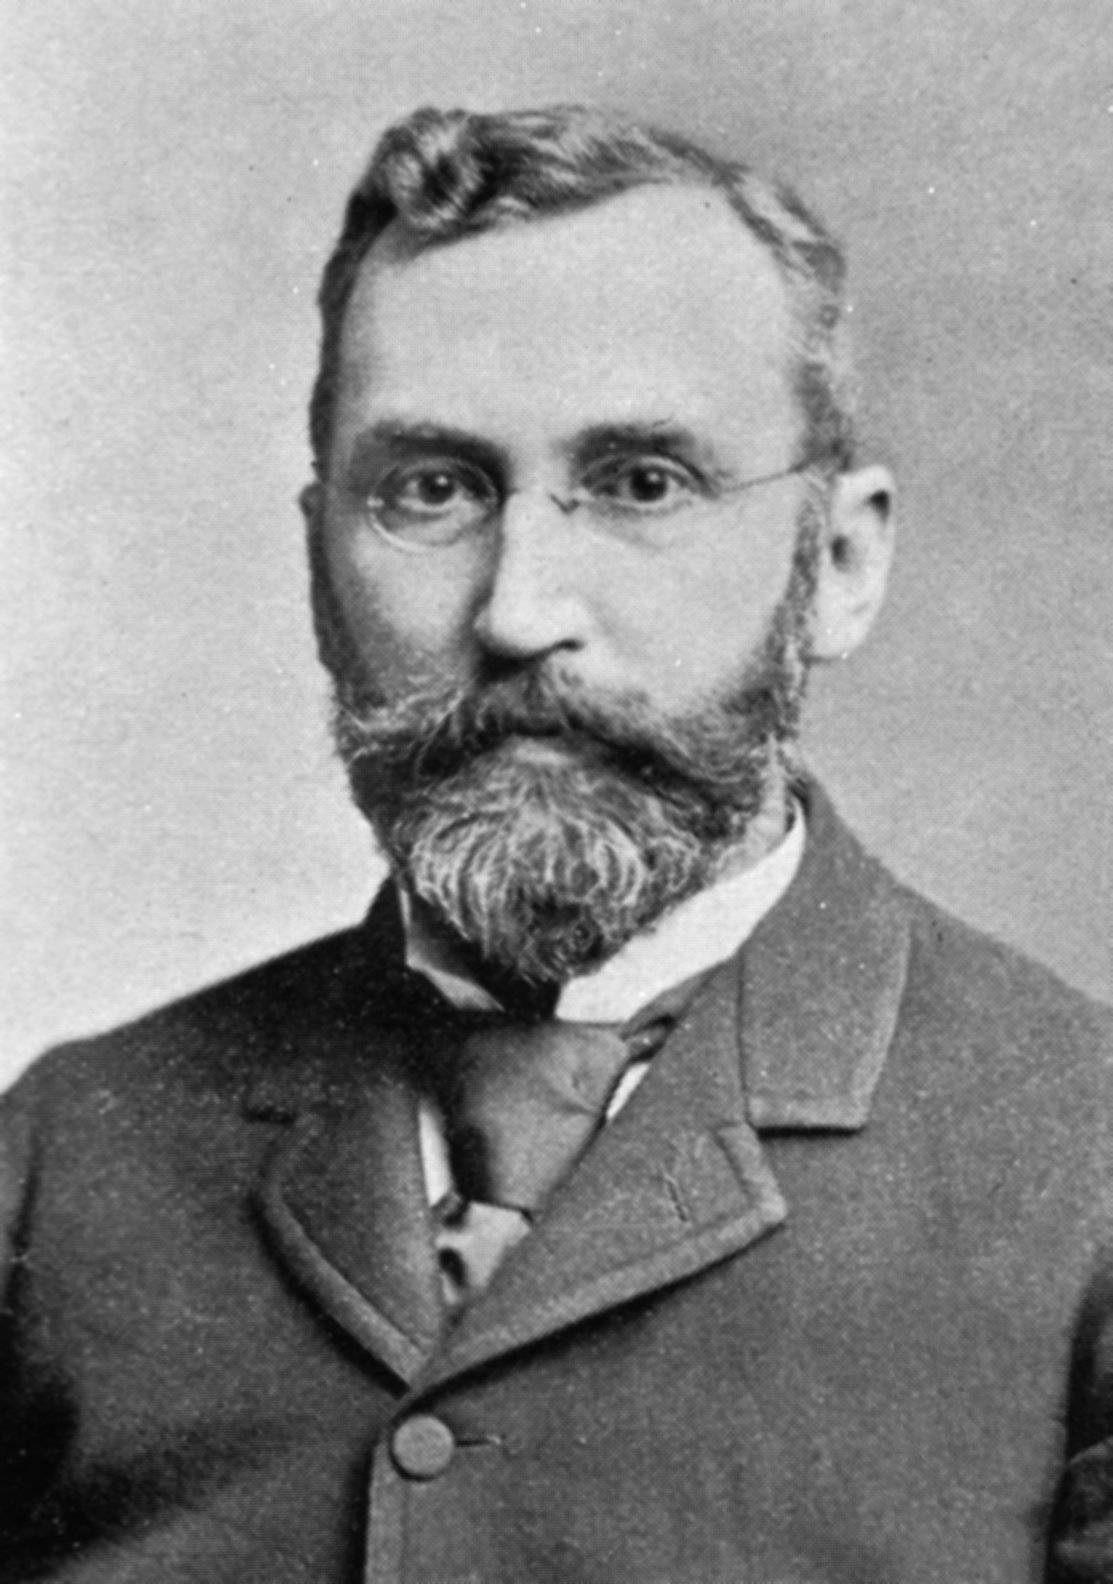 Dr George M. Gould Edward Mordrake